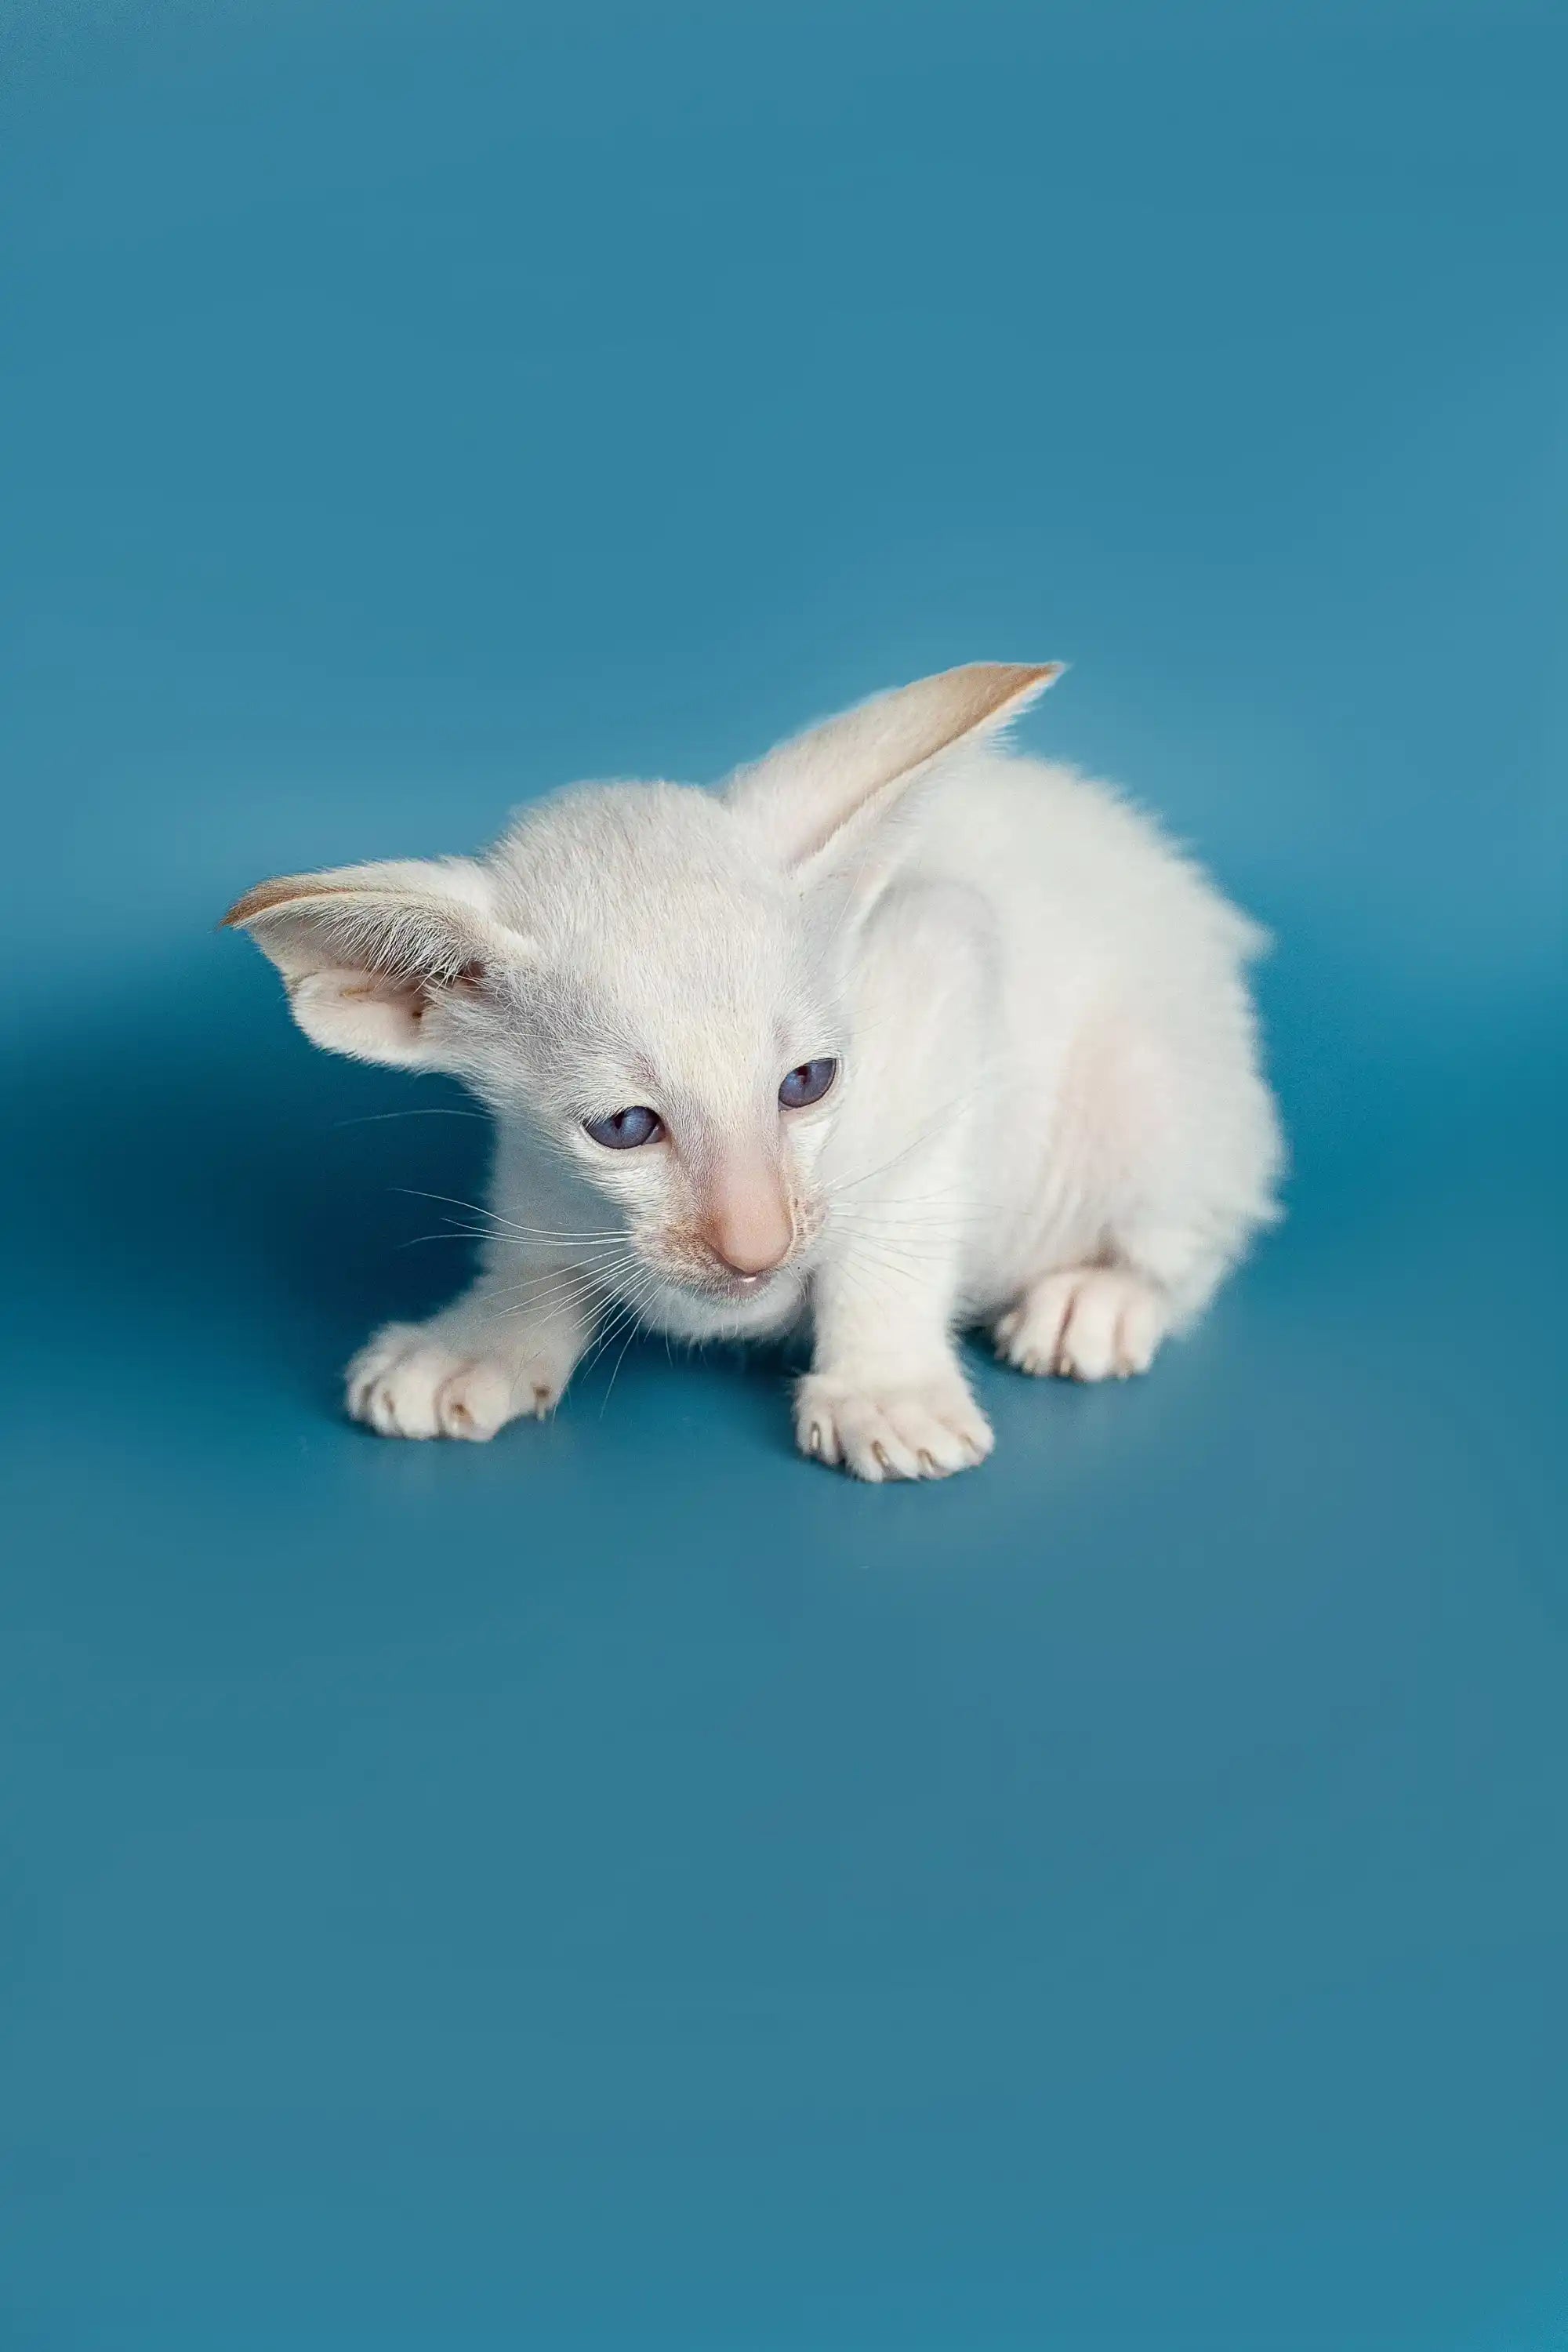 Oriental Shorthair Kittens For Sale Karl | Kitten